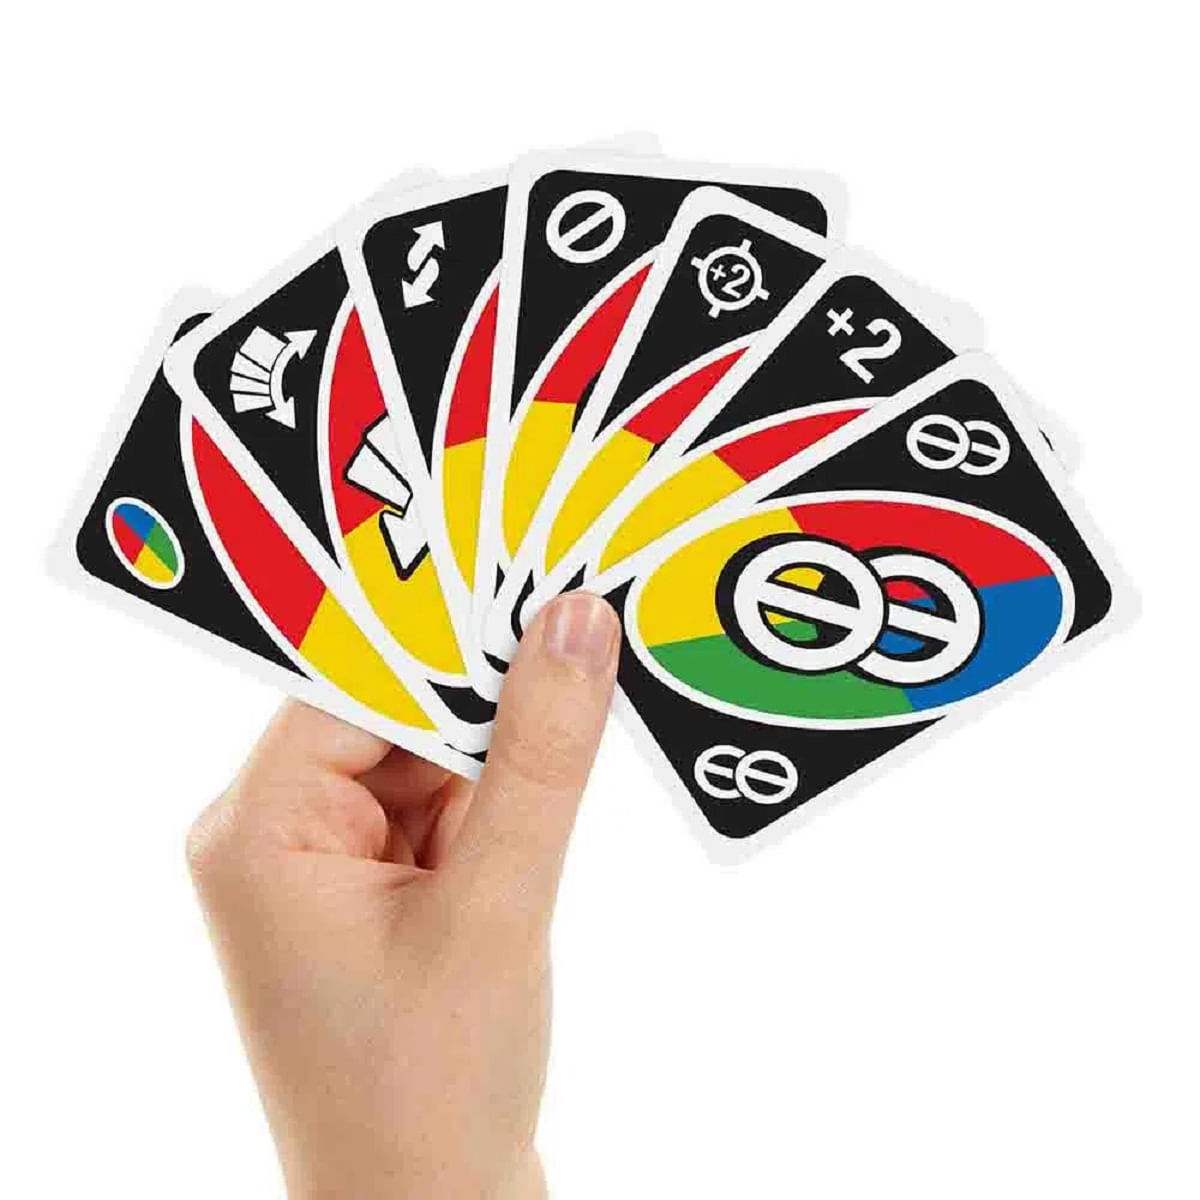 Uno para canhotos: jogo de cartas quebra tudo e lança versão 'reversa' com  baralho invertido